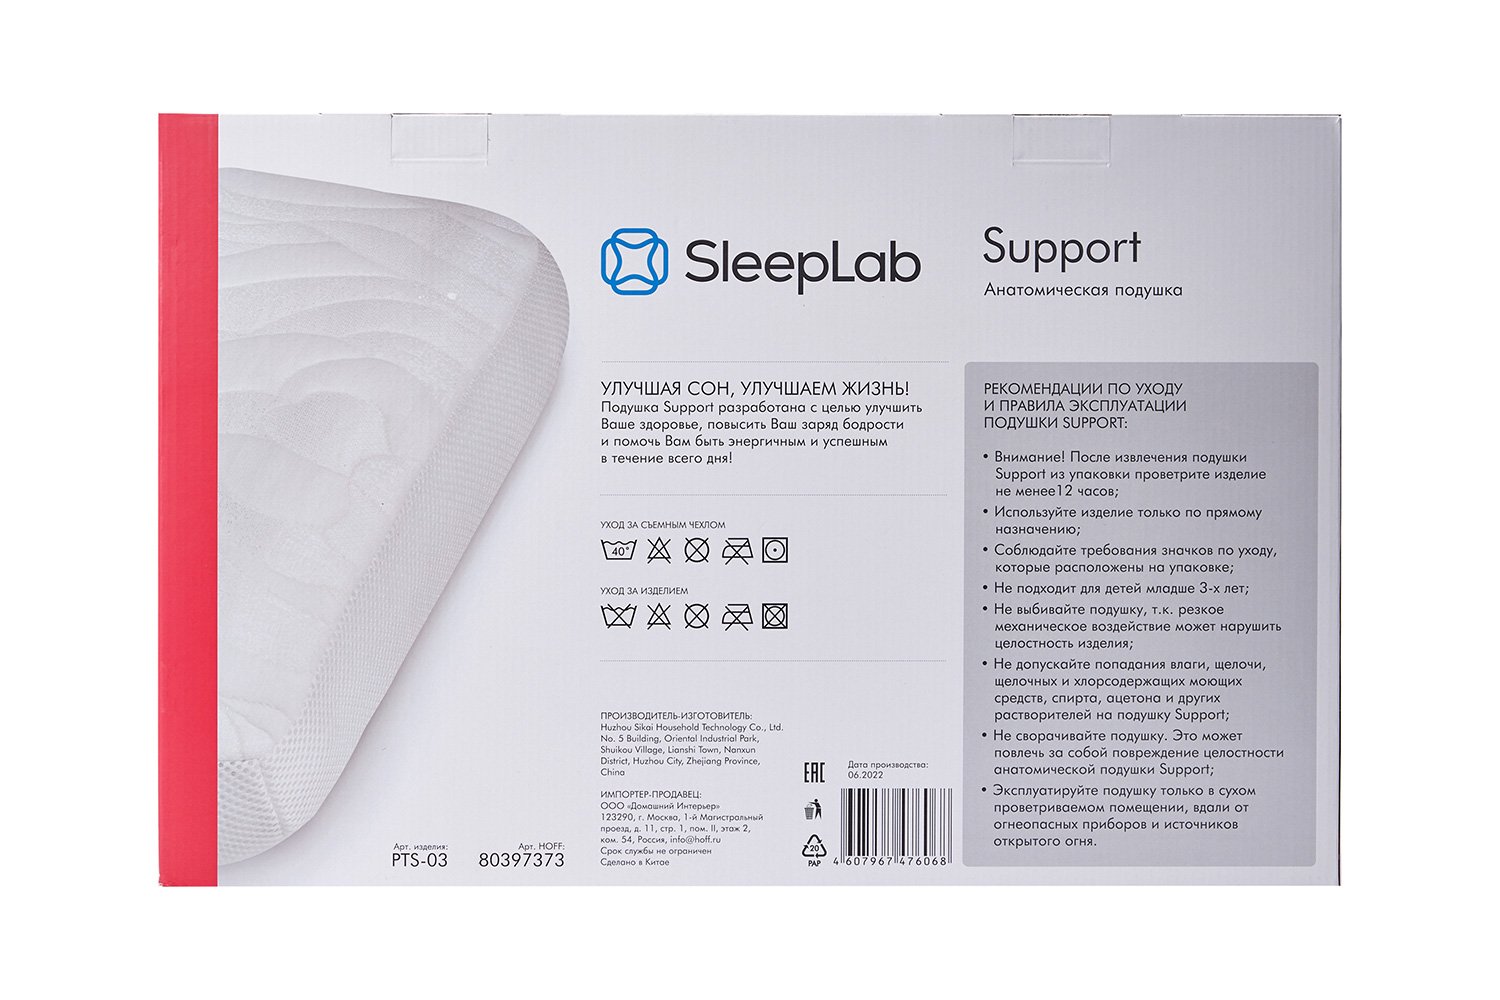 Подушка support. Sleeplab support подушка. Подушка Sleeplab Comfort. Анатомтческая подушка Sleeplab Comfort. Sleeplab professional.